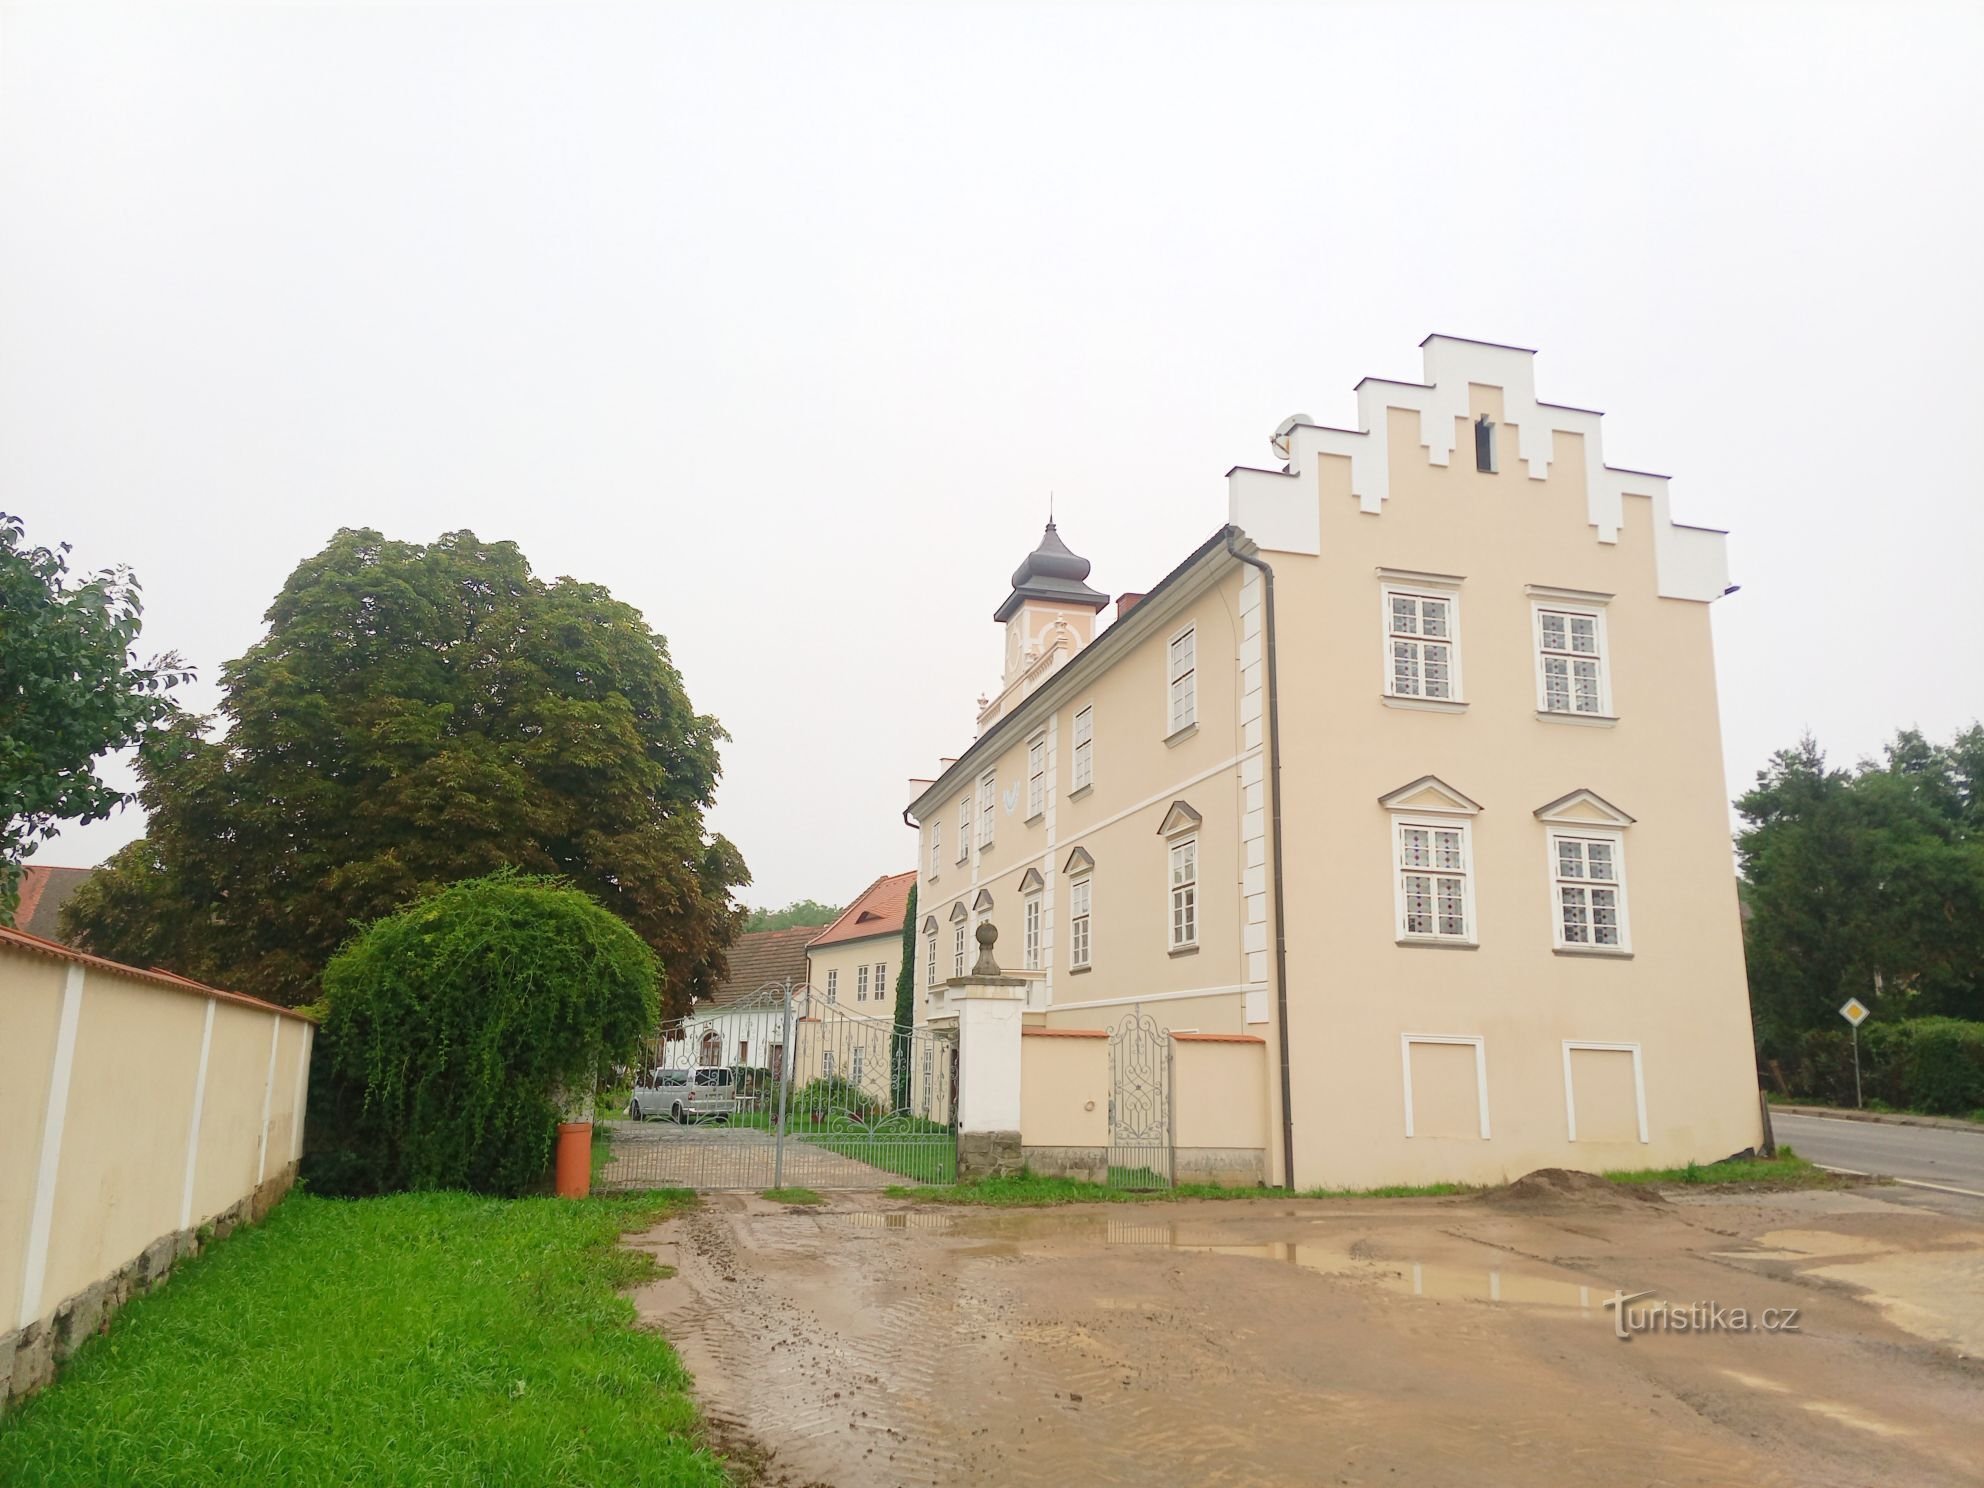 1. Castello rinascimentale a Kňovice dell'inizio del XVII secolo. Un edificio rettangolare a due piani con tr